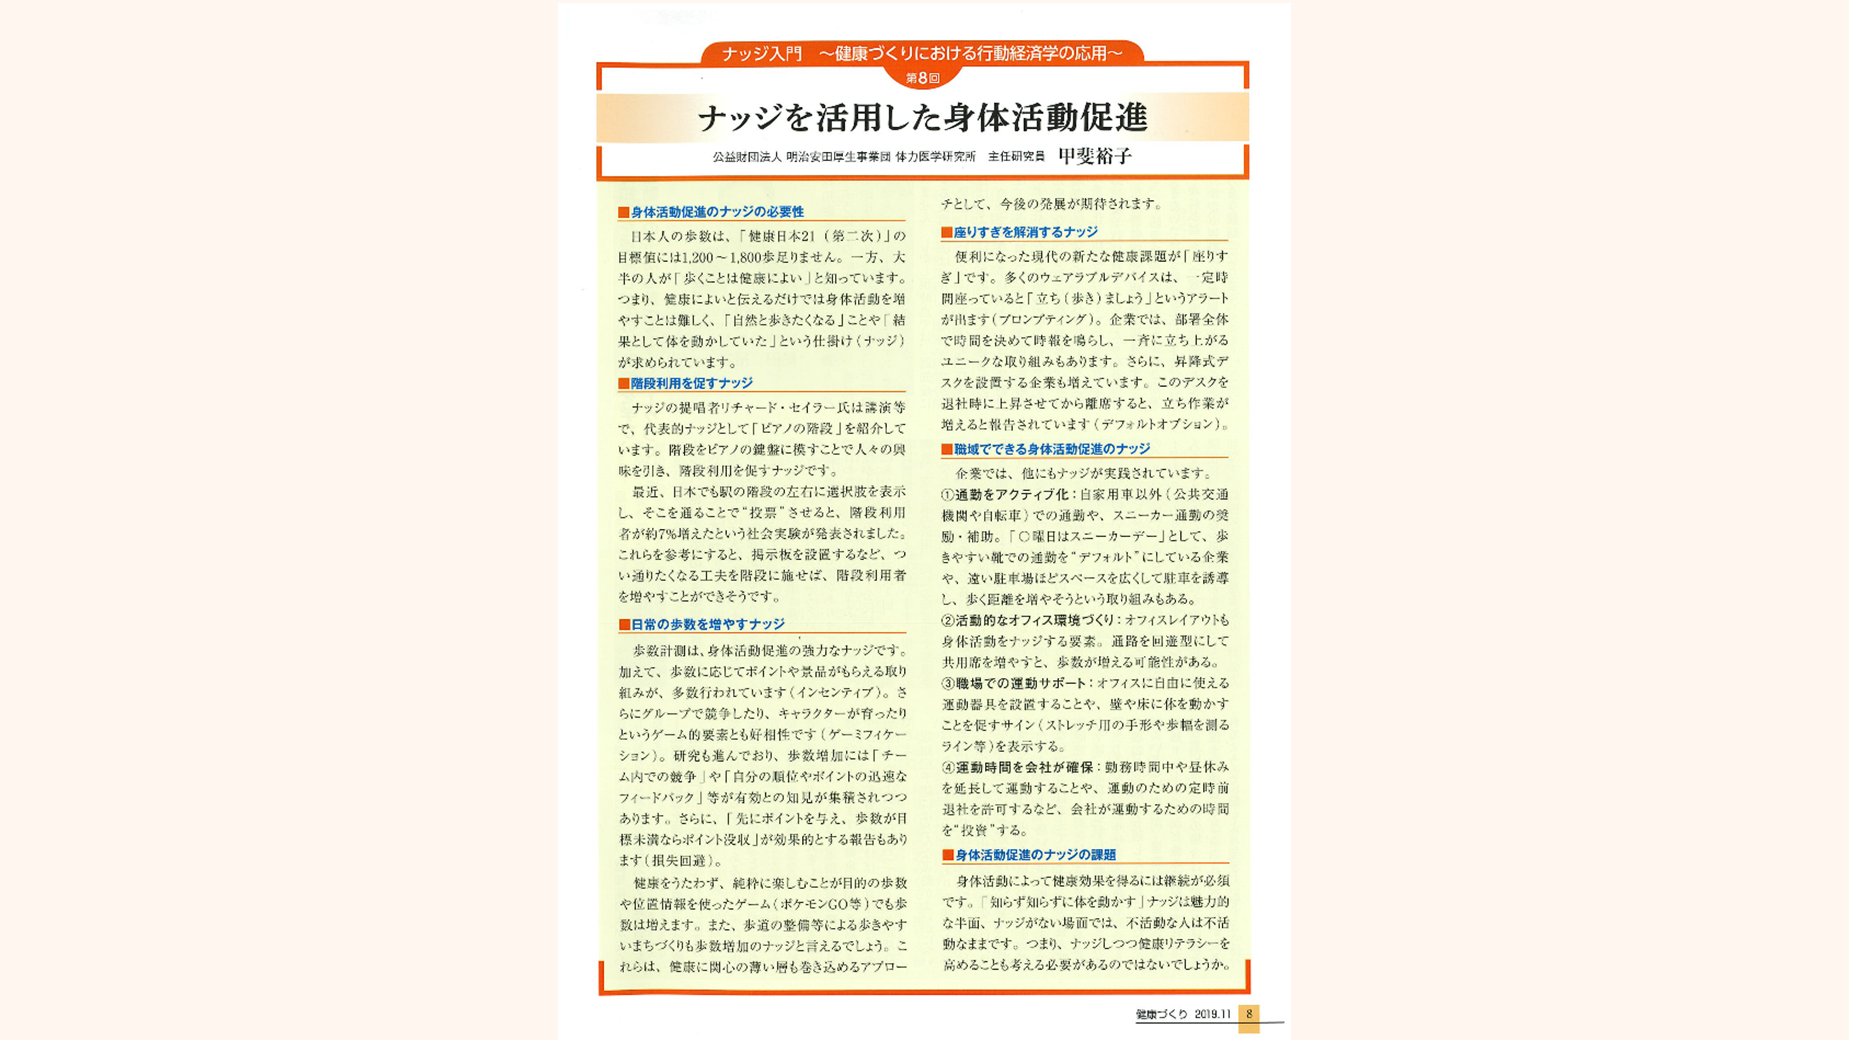 月刊「健康づくり」令和元年11月号に掲載